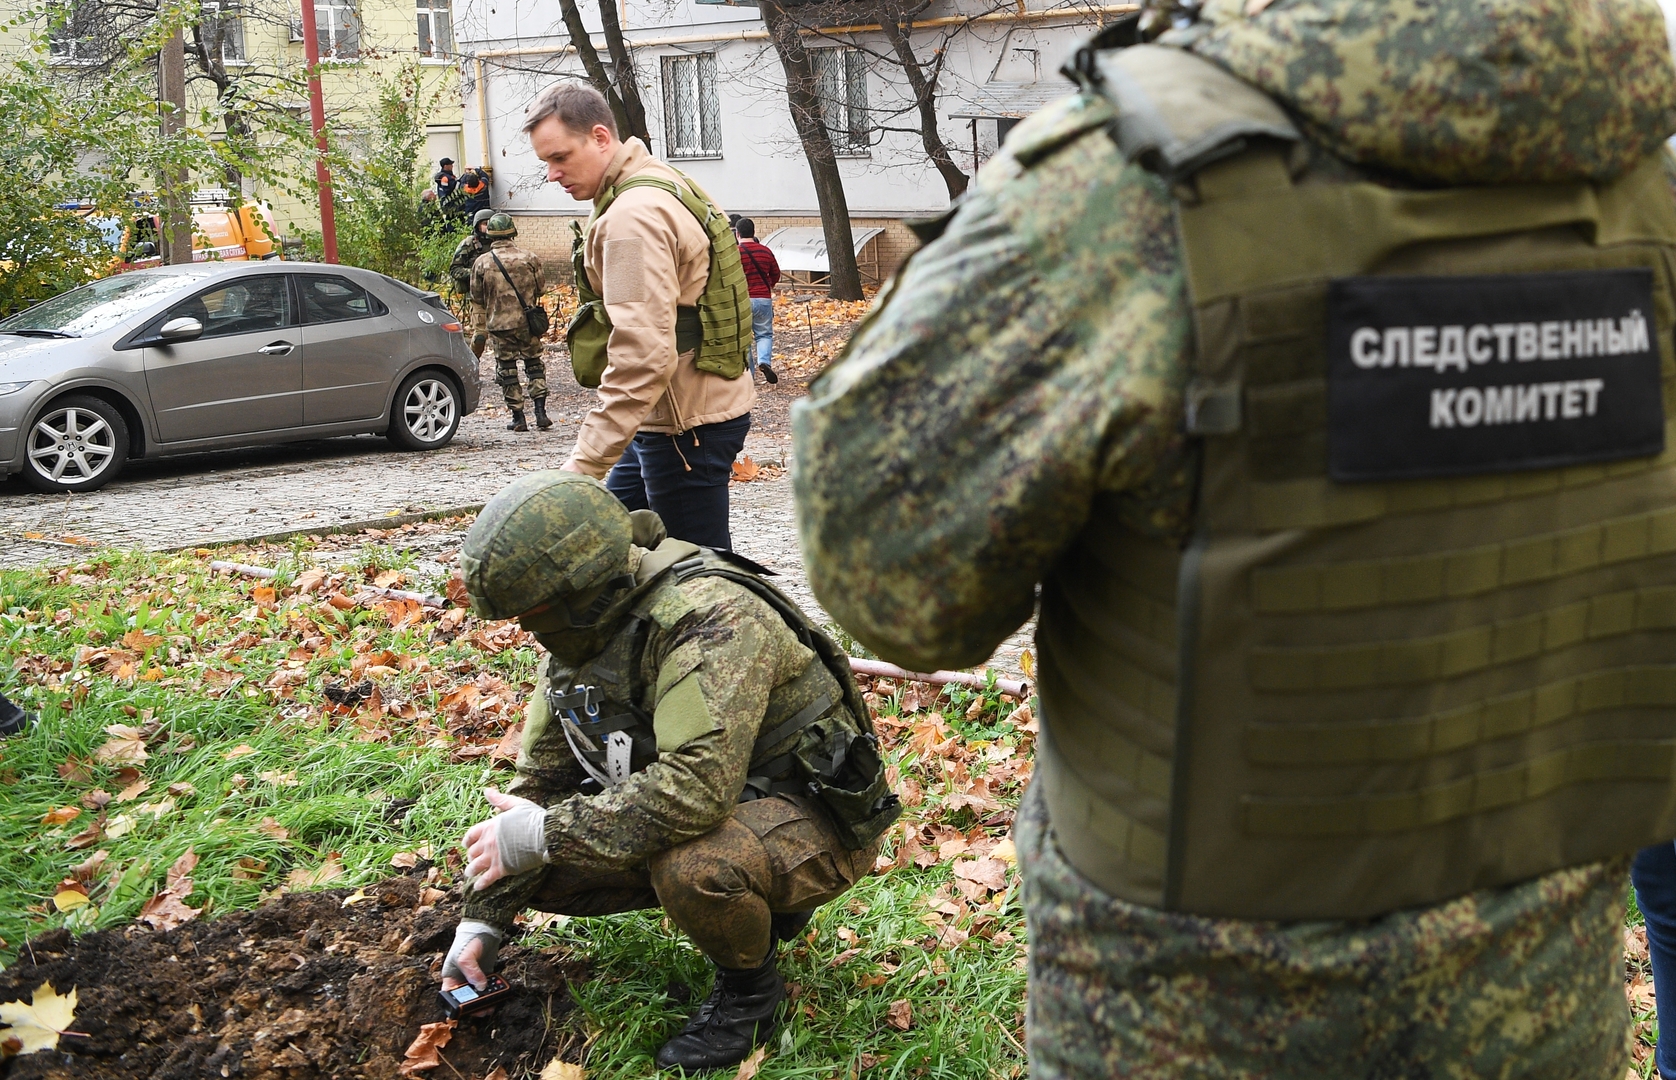 دونيتسك: مقتل 3 مدنيين وإصابة 7 جراء قصف أوكراني